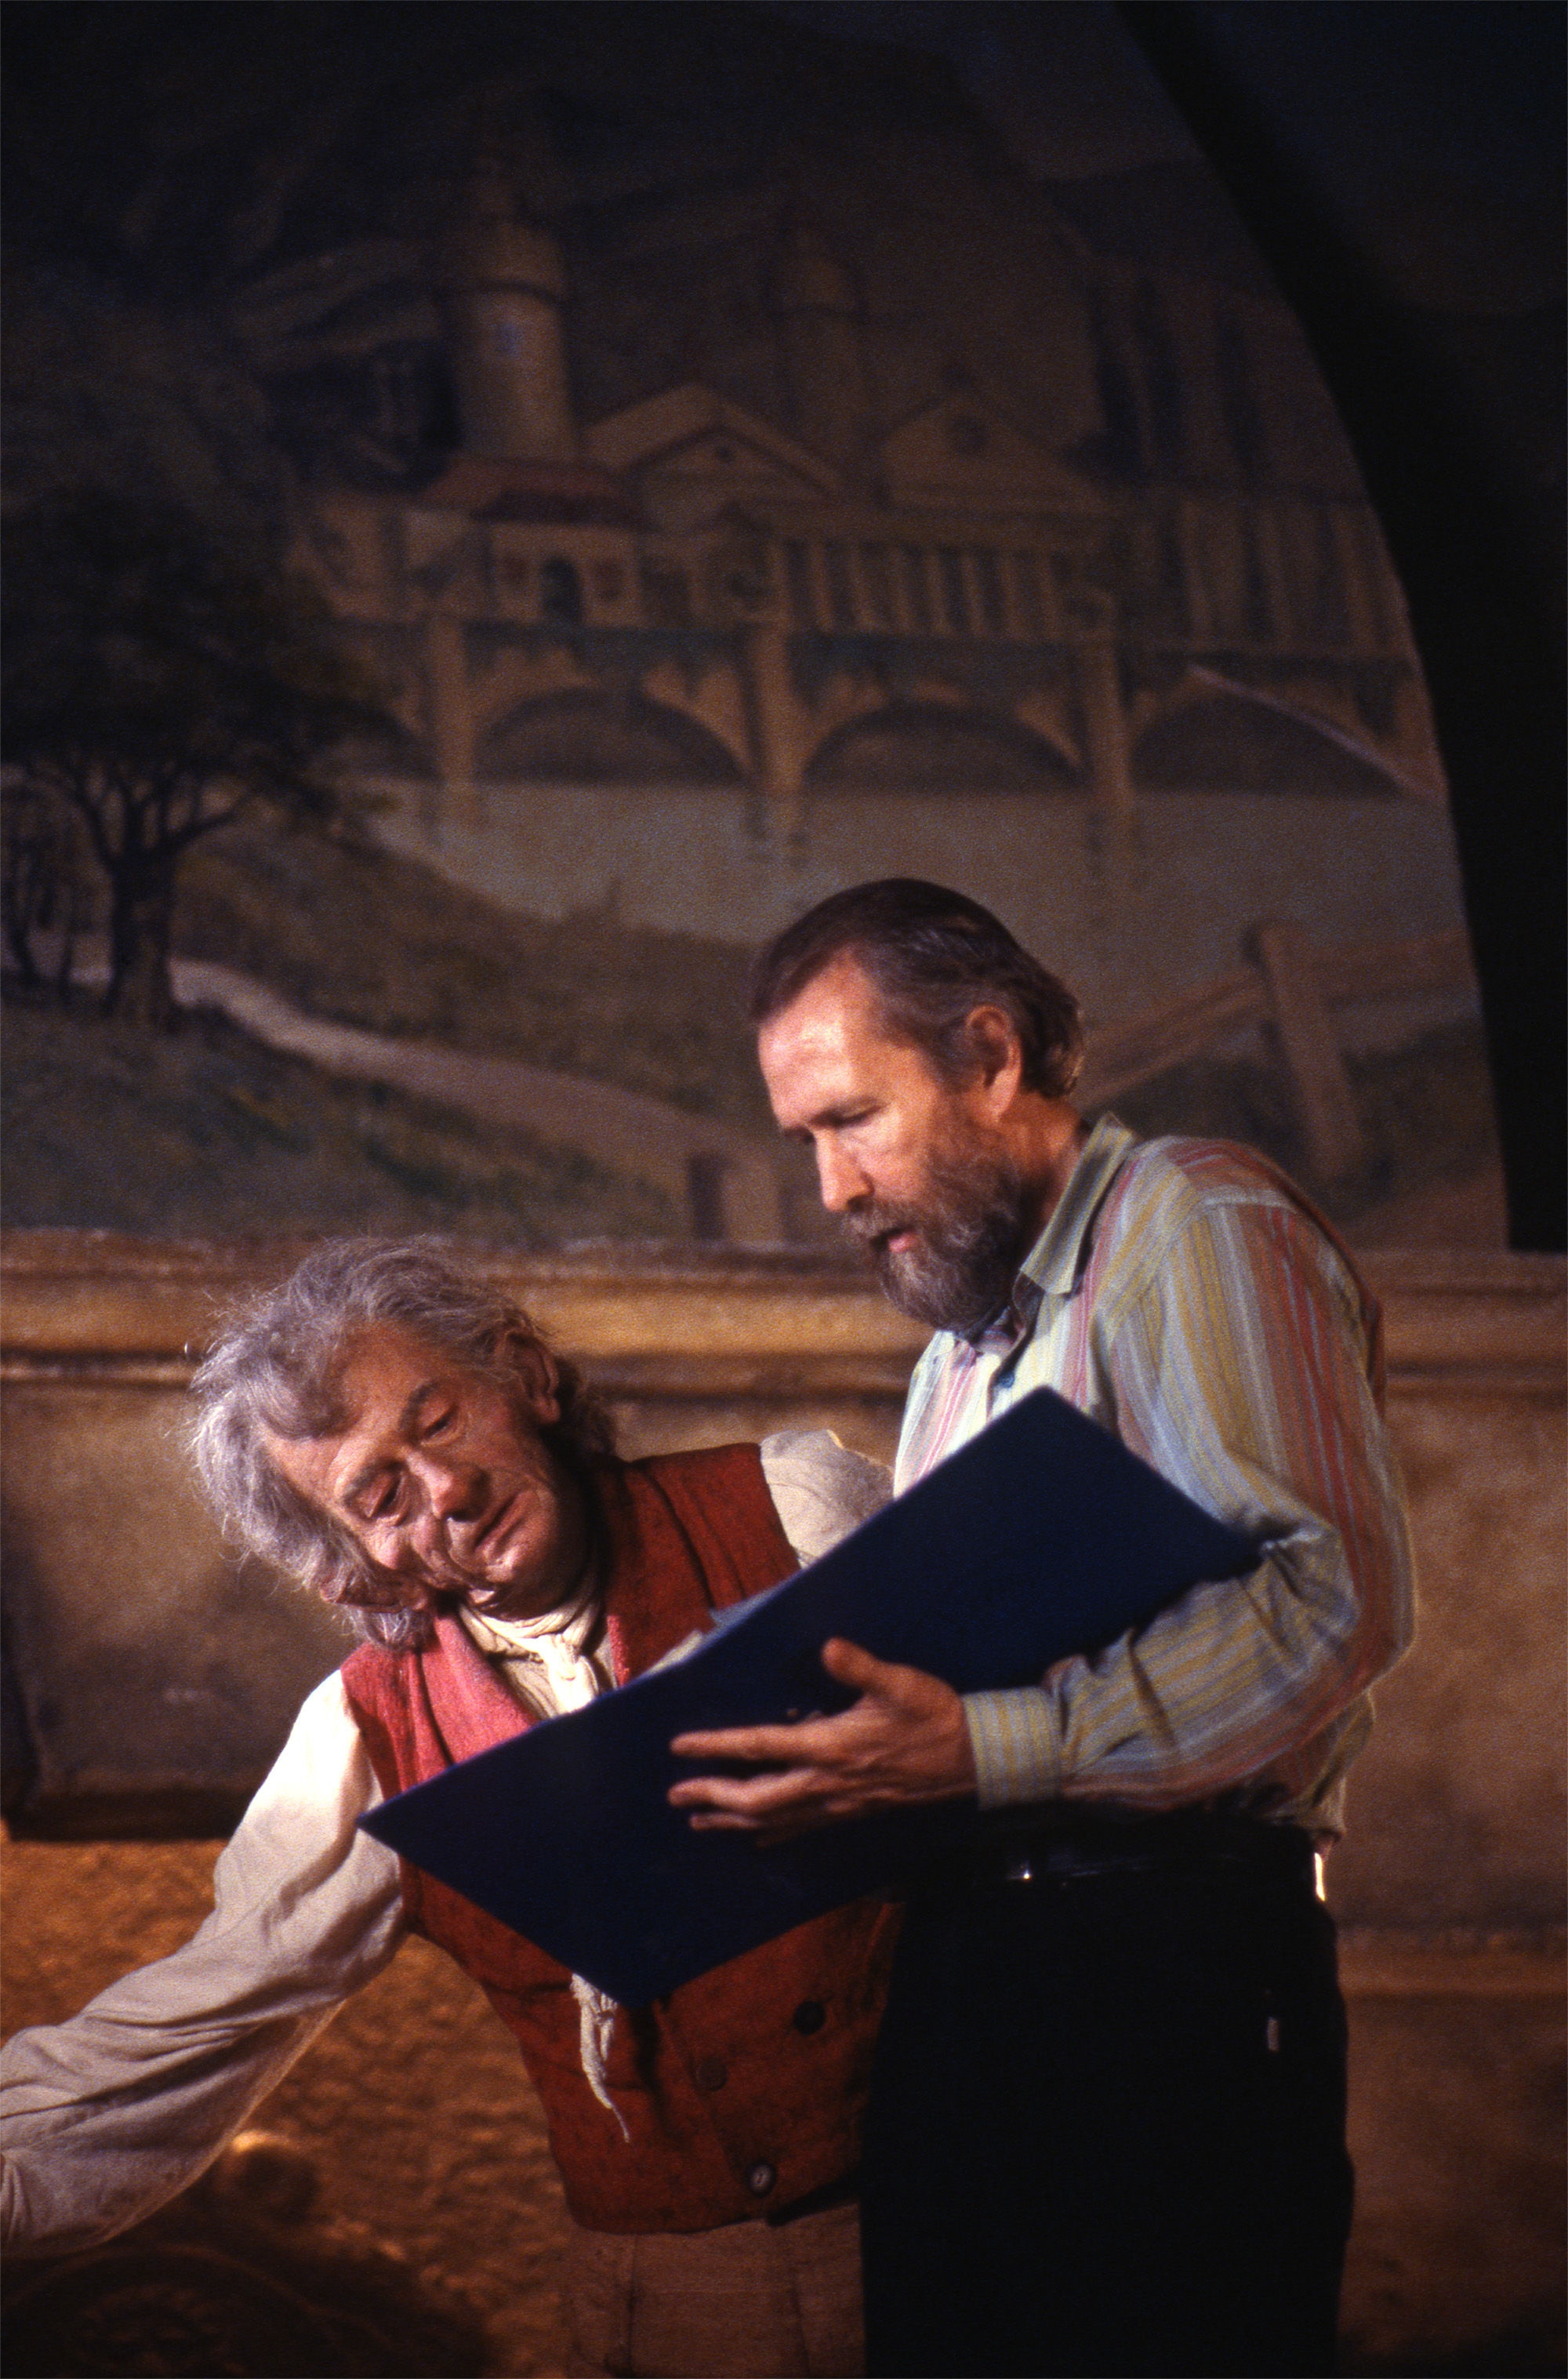 John Hurt and Jim Henson on the set of The Storyteller